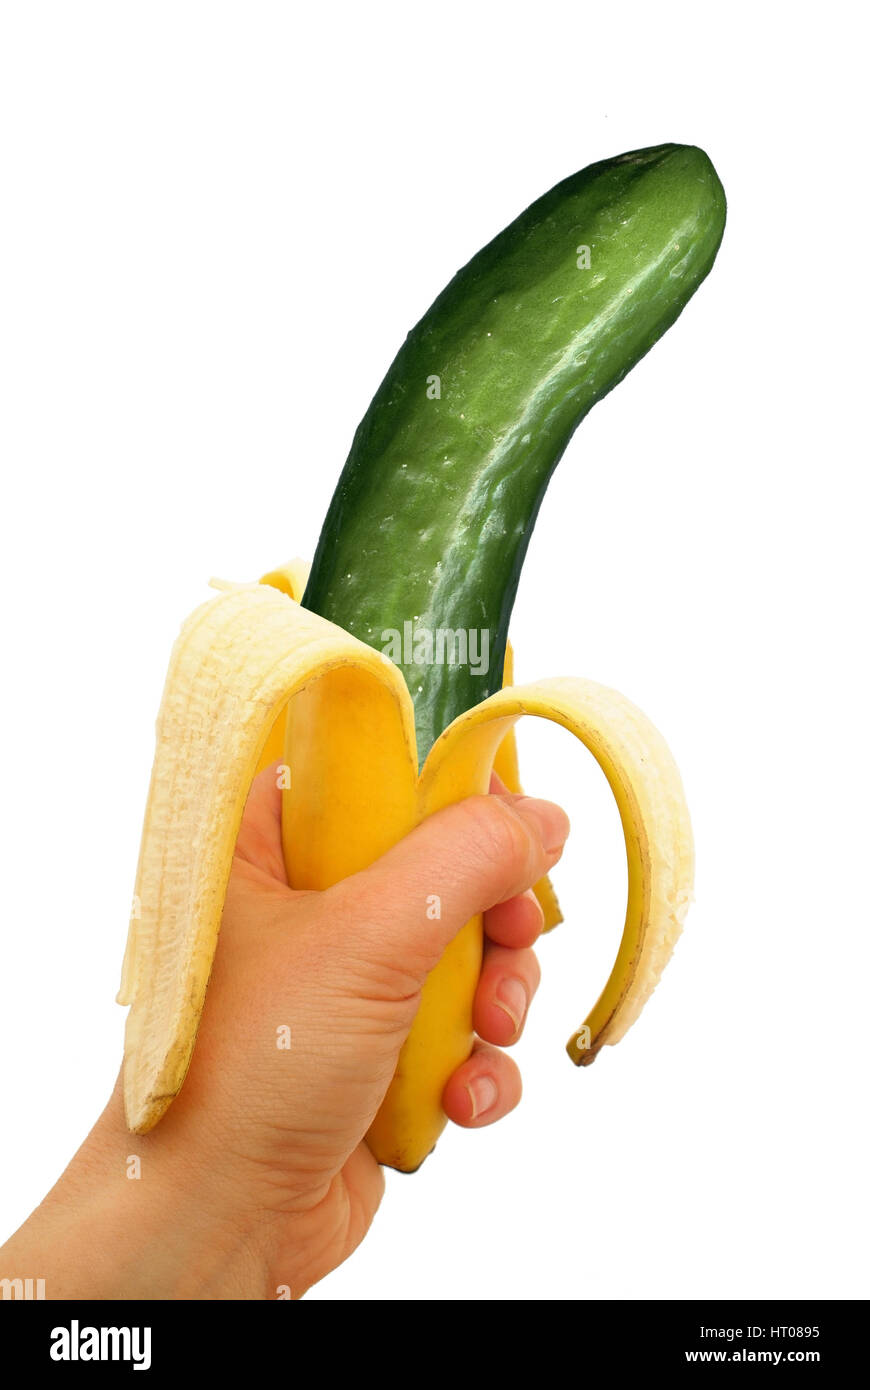 Symbolbild Genfood, Gurke waechst aus Bananenschale - symbolique de la nourriture génétiquement modifiée, le concombre en peau de banane Banque D'Images